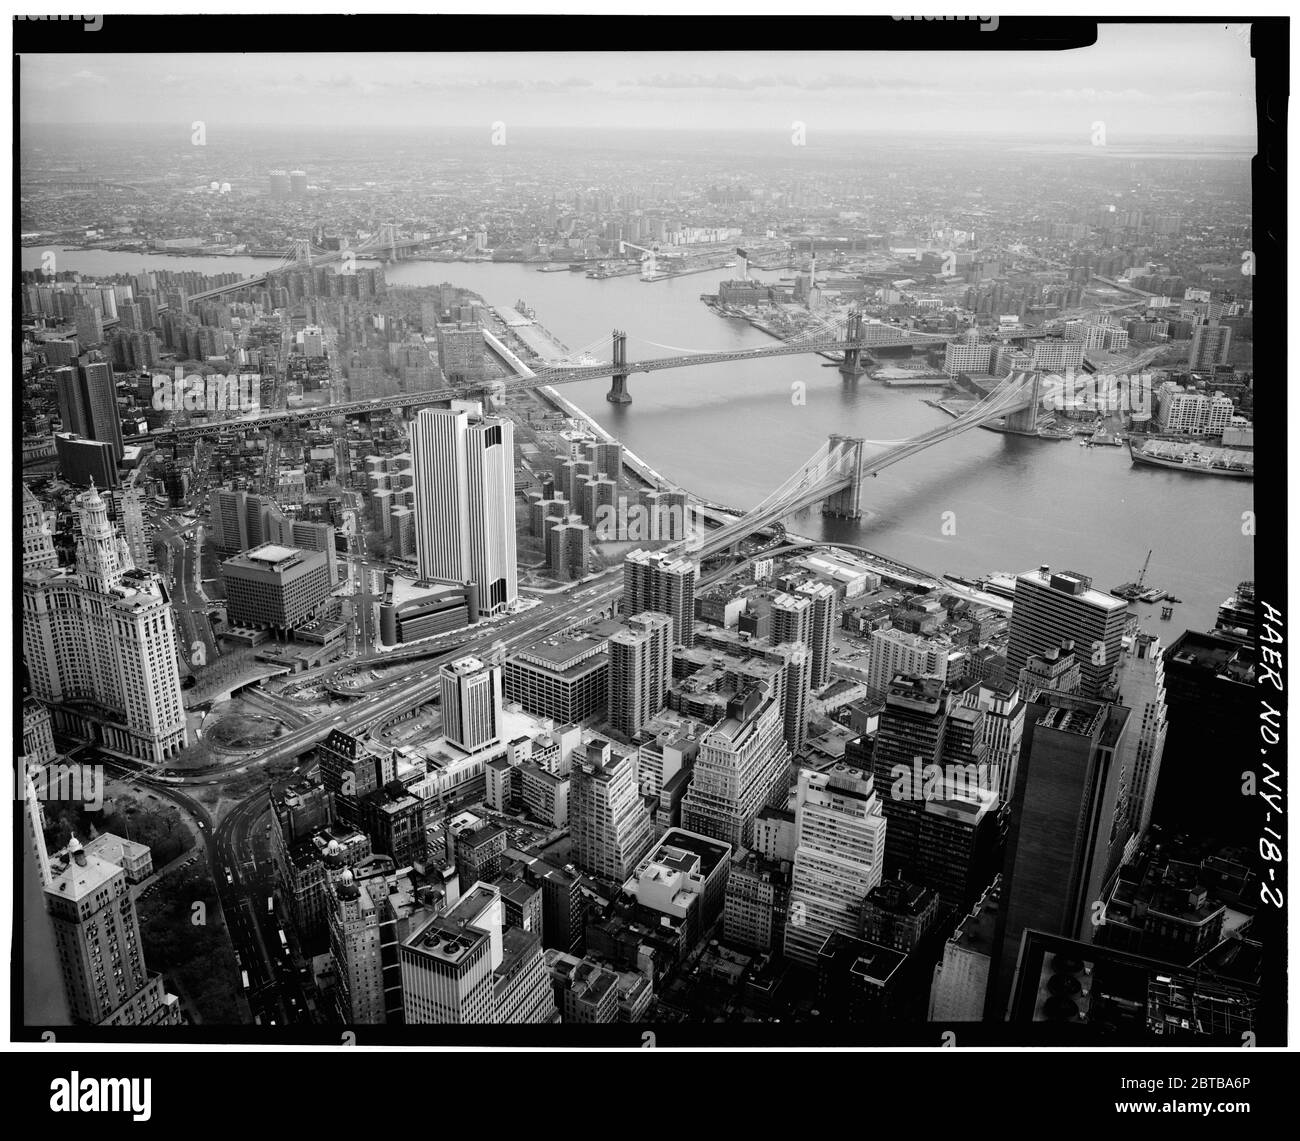 1982, NEW YORK , USA : Vista dalla cima della World Trade Tower . Brooklyn Bridge, Spanning East River tra Park Row , Manhattan e Sands Street , Brooklyn , New York, New York County, NY . Il grande ponte sospeso East River, aperto il giorno 24 maggio 1883 -- che collega le città di New York e Brooklyn . Foto di Jet Lowe ( immagini del Governo degli Stati Uniti ) - PONTE DI BROOKLYN - FOTO STORICHE - STORIA - GEOGRAFIA - GEOGRAFIA - paesaggio - paesaggio - veduta - panorama - fiume hudson - paesaggio - TORRI GEMELLE - TORRI GEMELLE - TORRI GEMELLE - TORRI GEMELLE ---- Archivio GBB Foto Stock